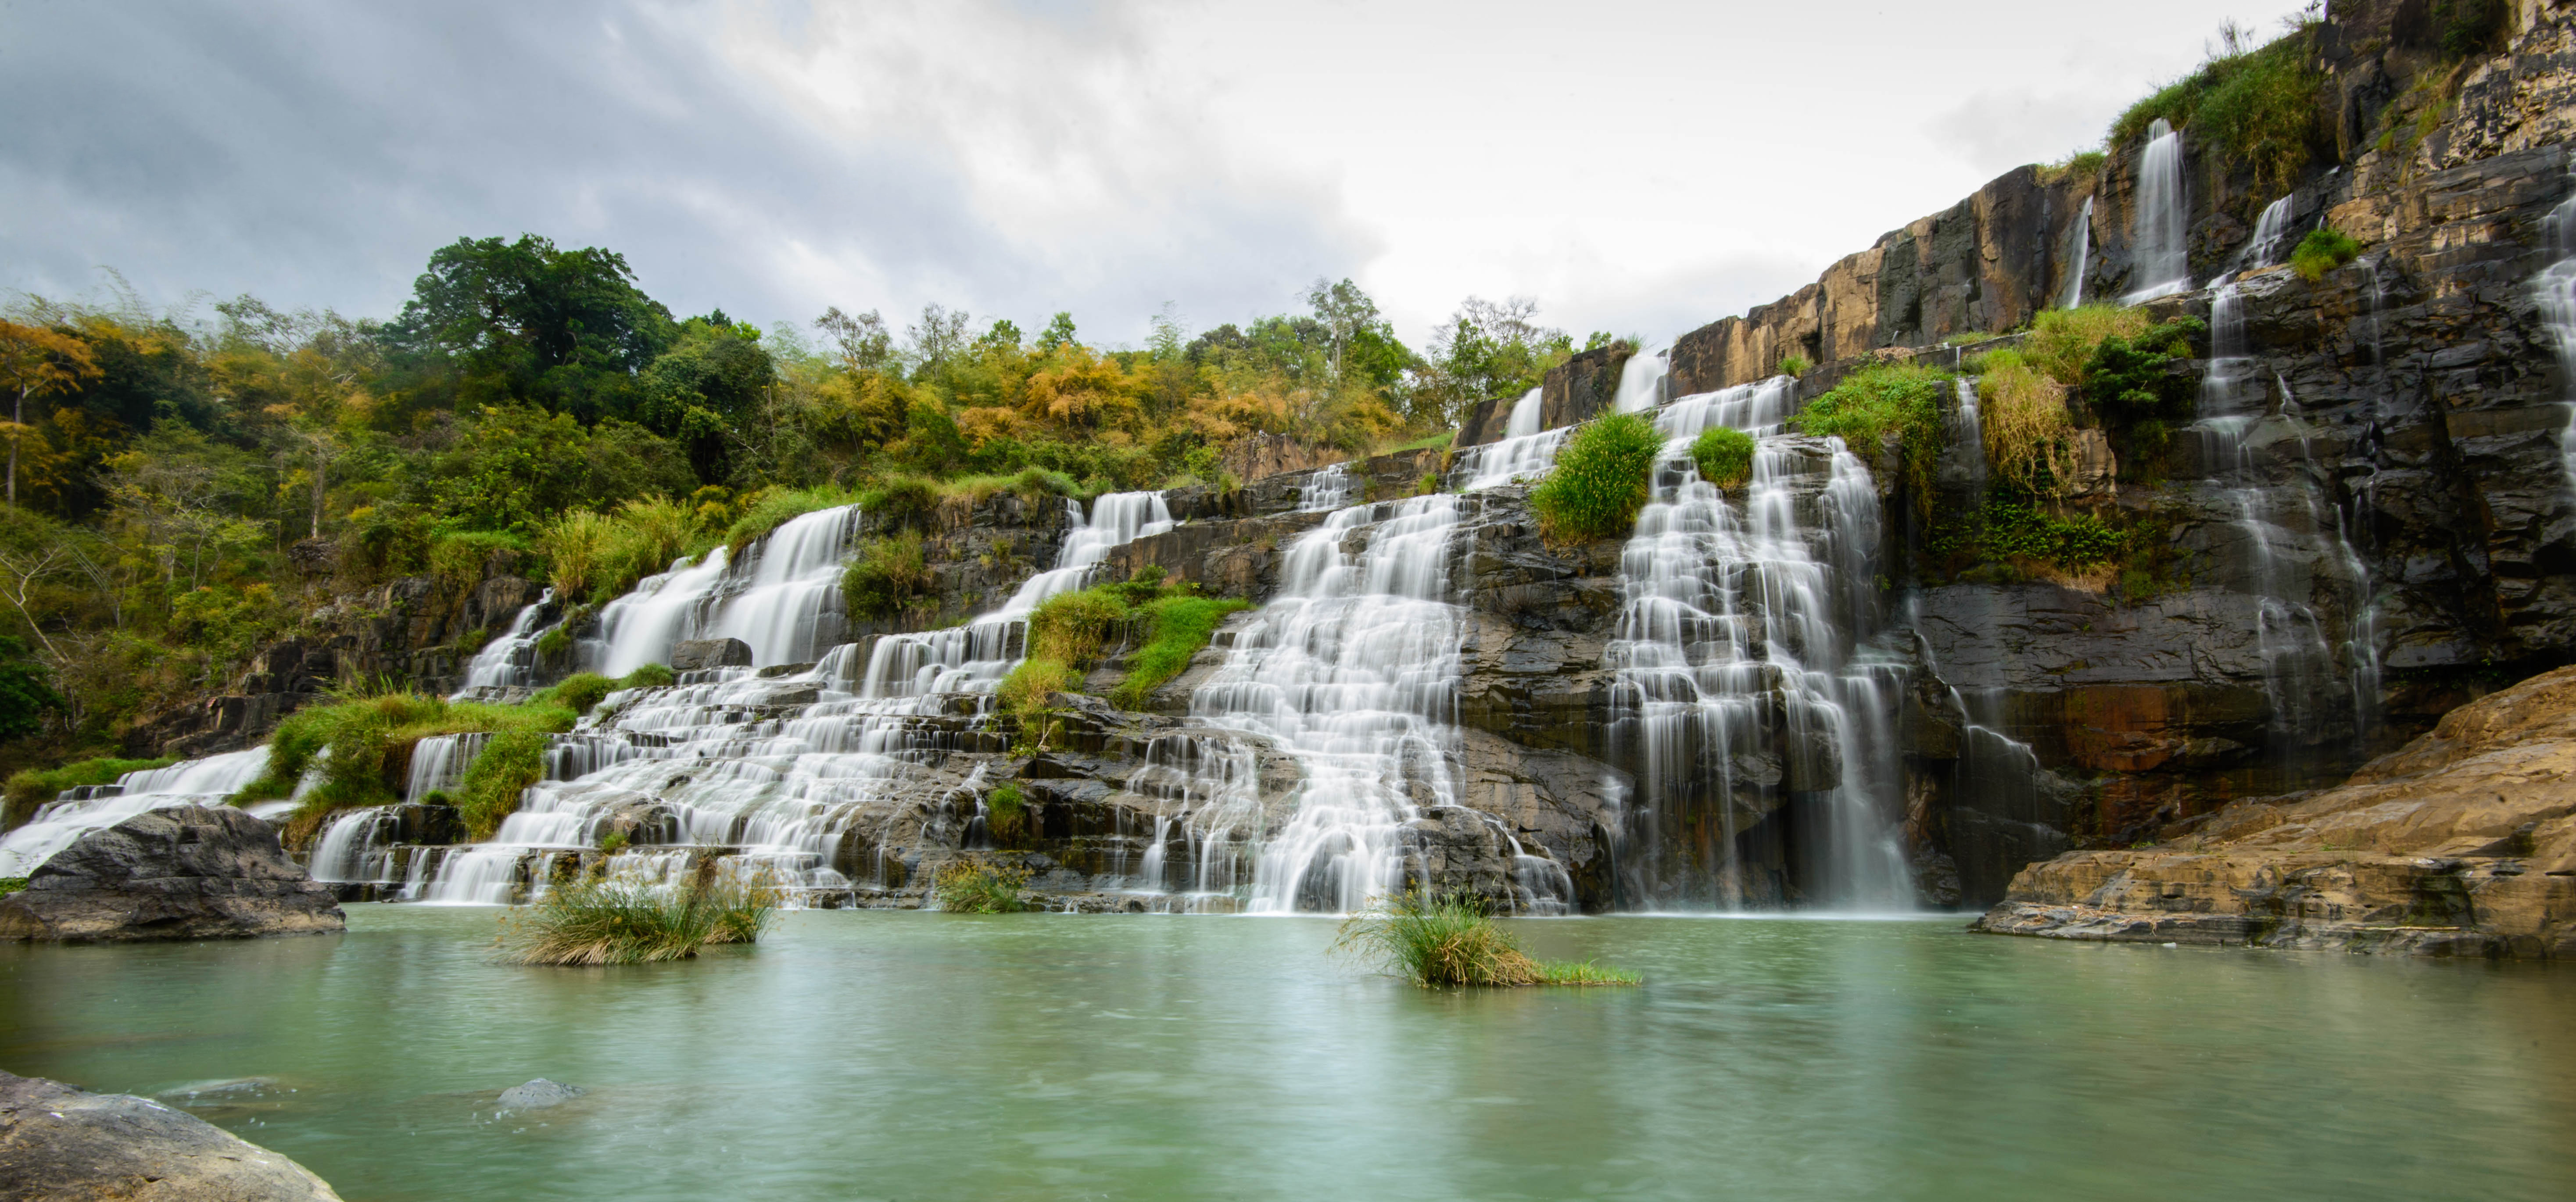 Живописный водопад с порогами во Вьетнаме